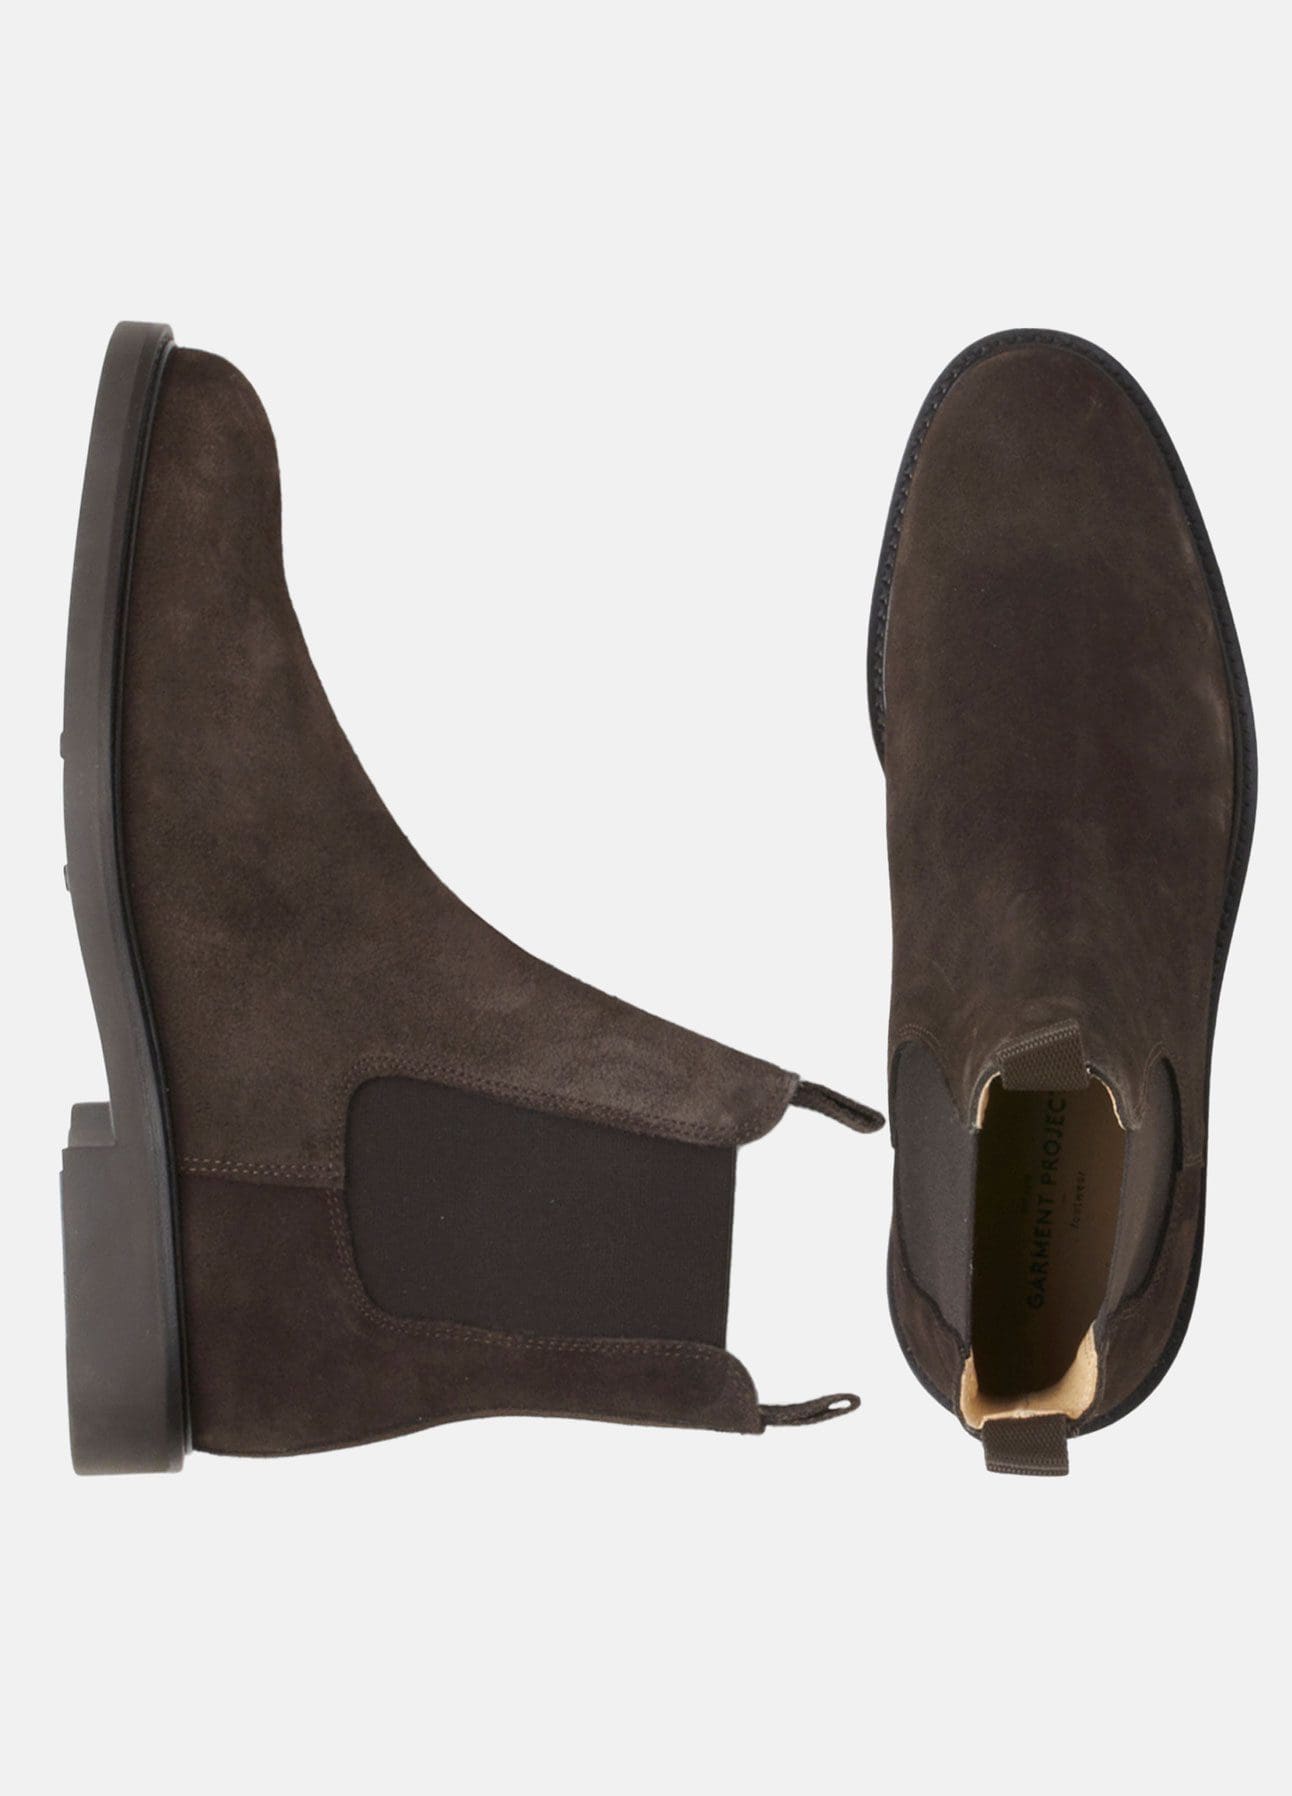 Premonition Ubarmhjertig så meget Chelsea boots fra Garment Project | Shop online hos troelstrup.com